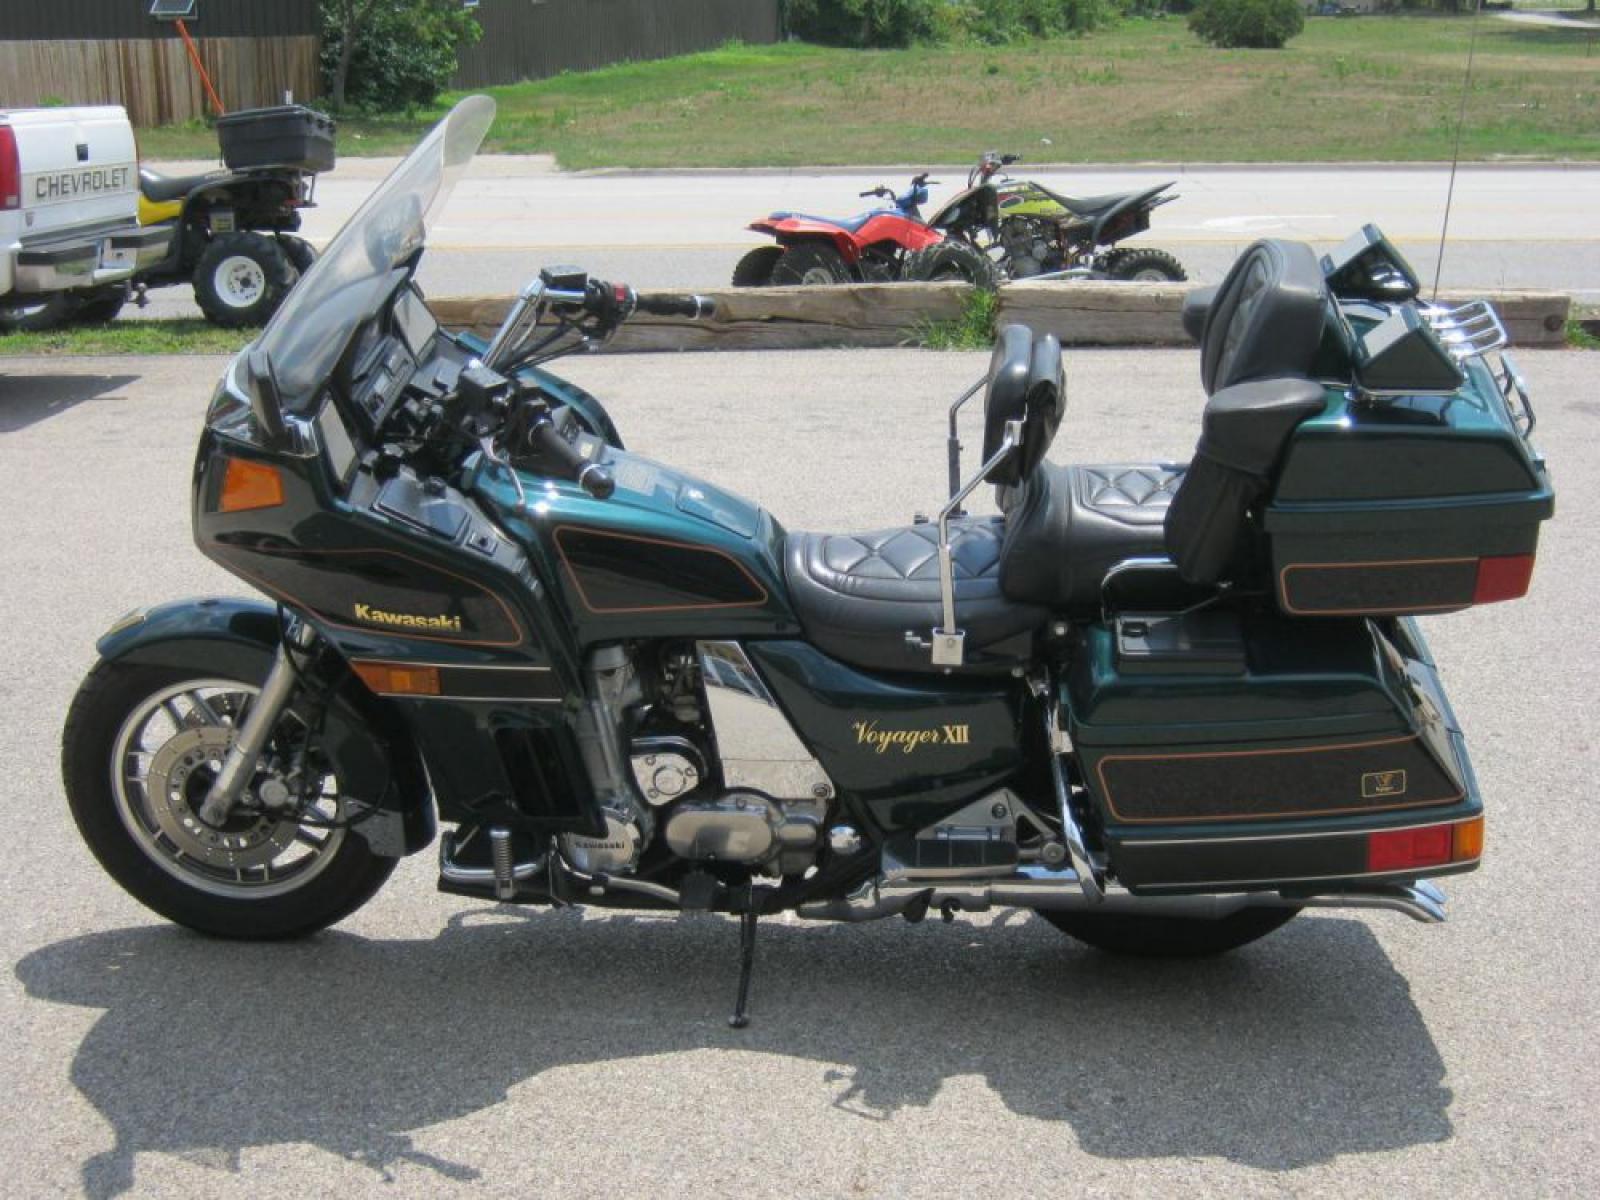 2001 Kawasaki Voyager XII -